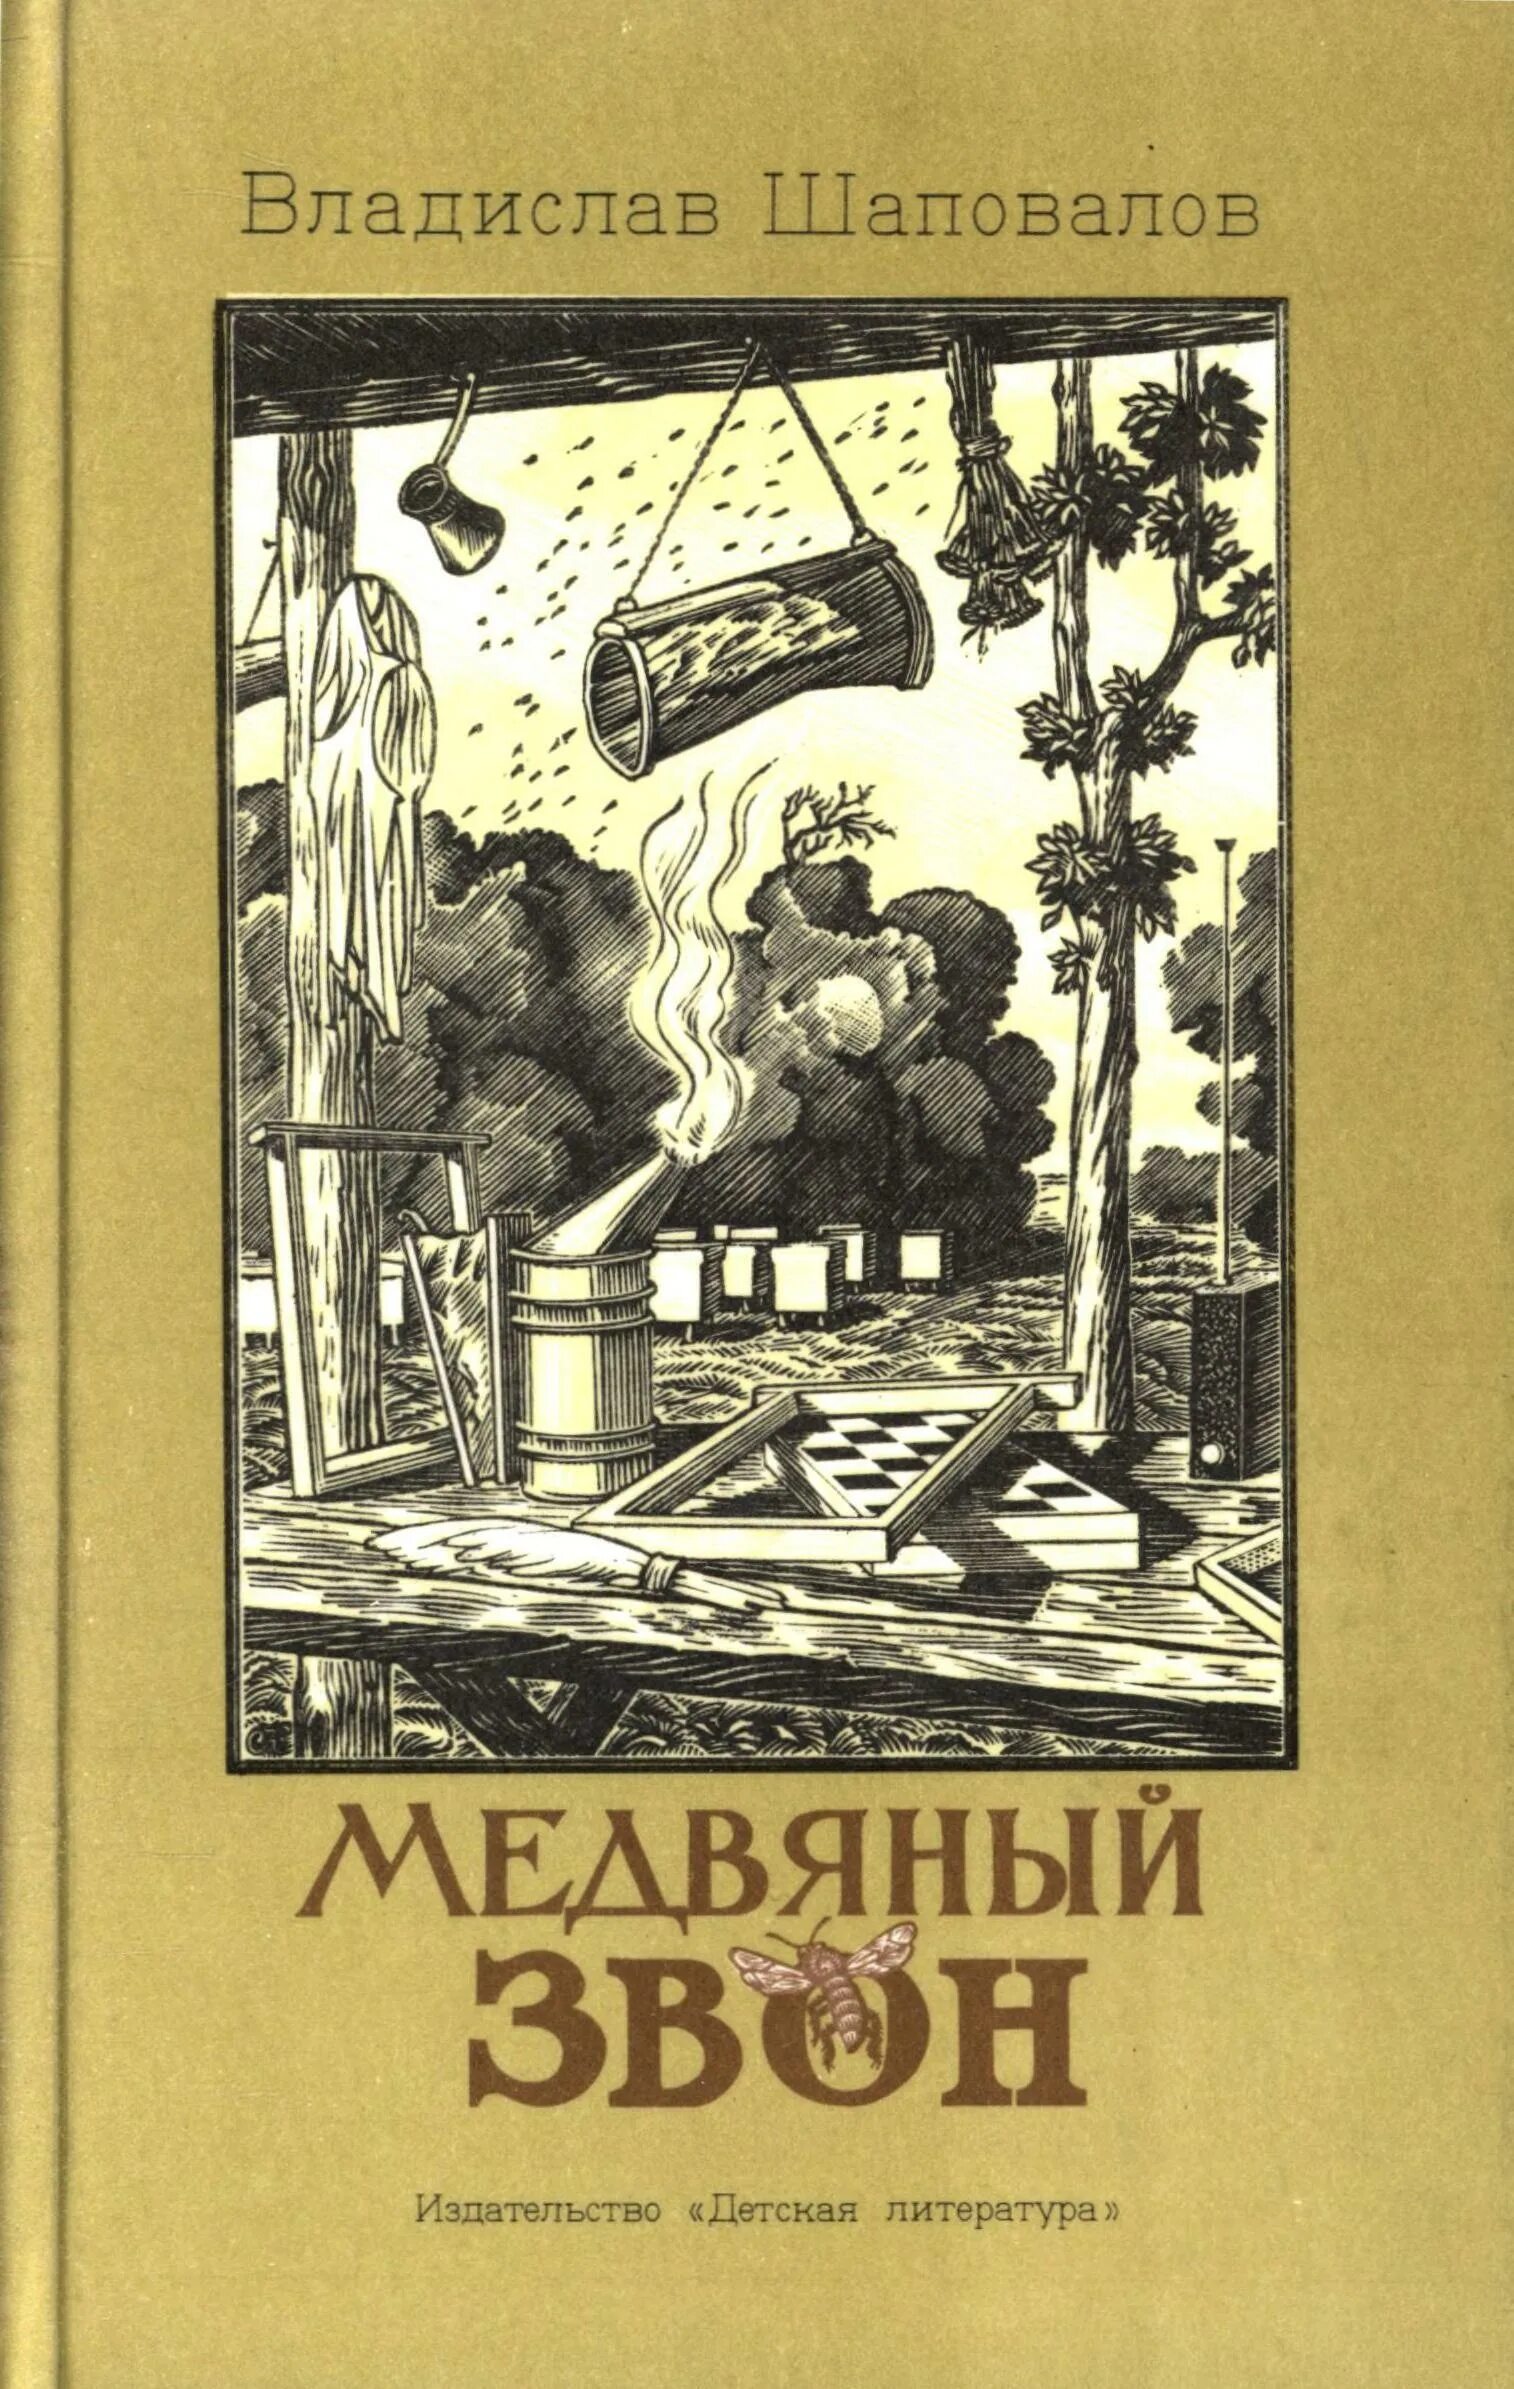 Медвяный звон Шаповалов. Книга звон